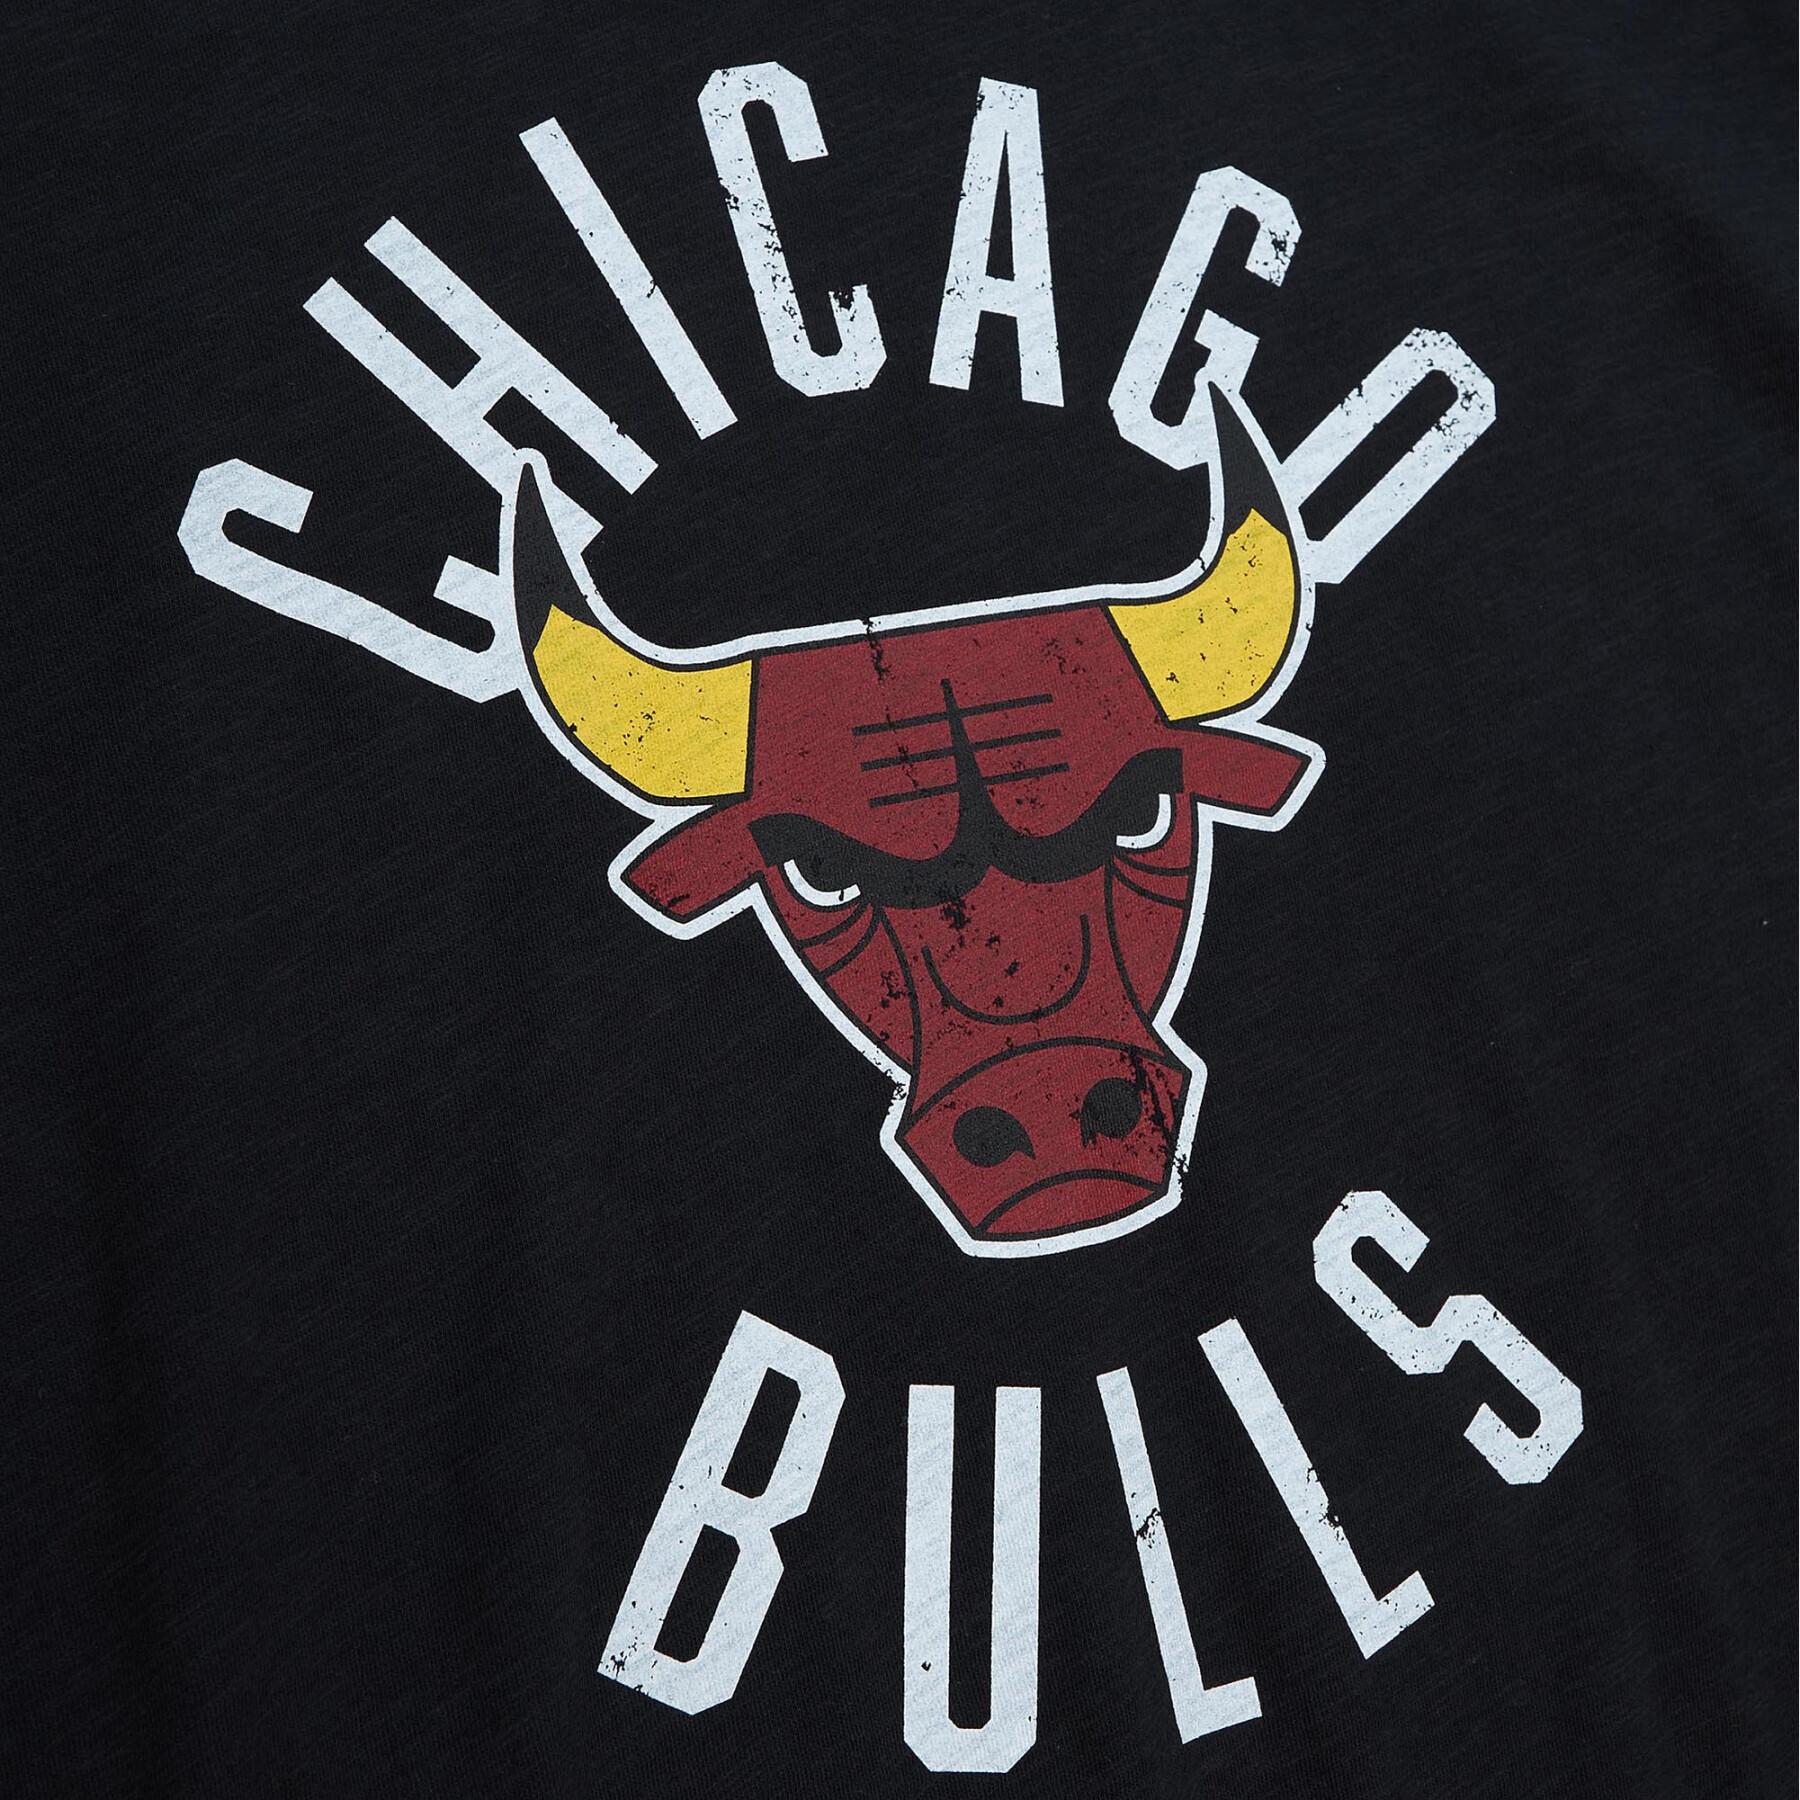 Camiseta Chicago Bulls Legendary Slub